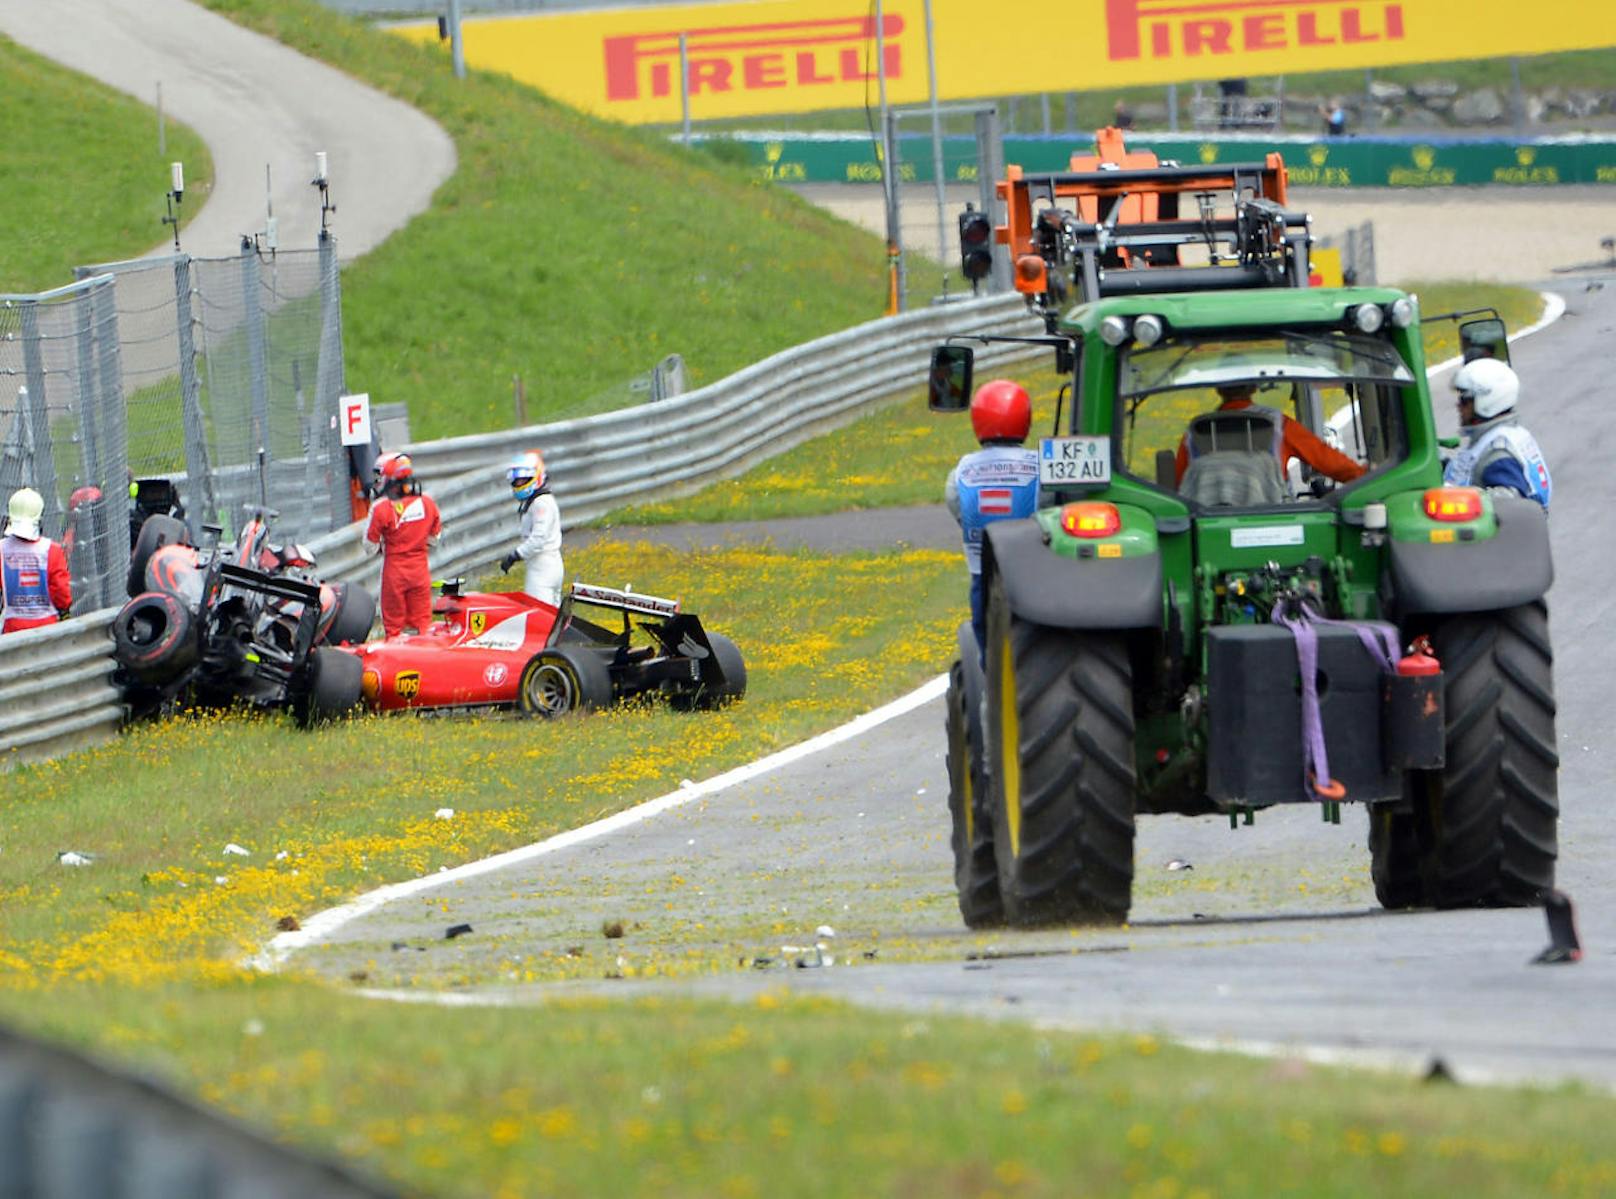 2015: Gleich nach dem Start kam es zum heftigen Crash zwischen Kimi Räikkönen und Fernando Alonso. Der McLaren landete auf dem Ferrari. 